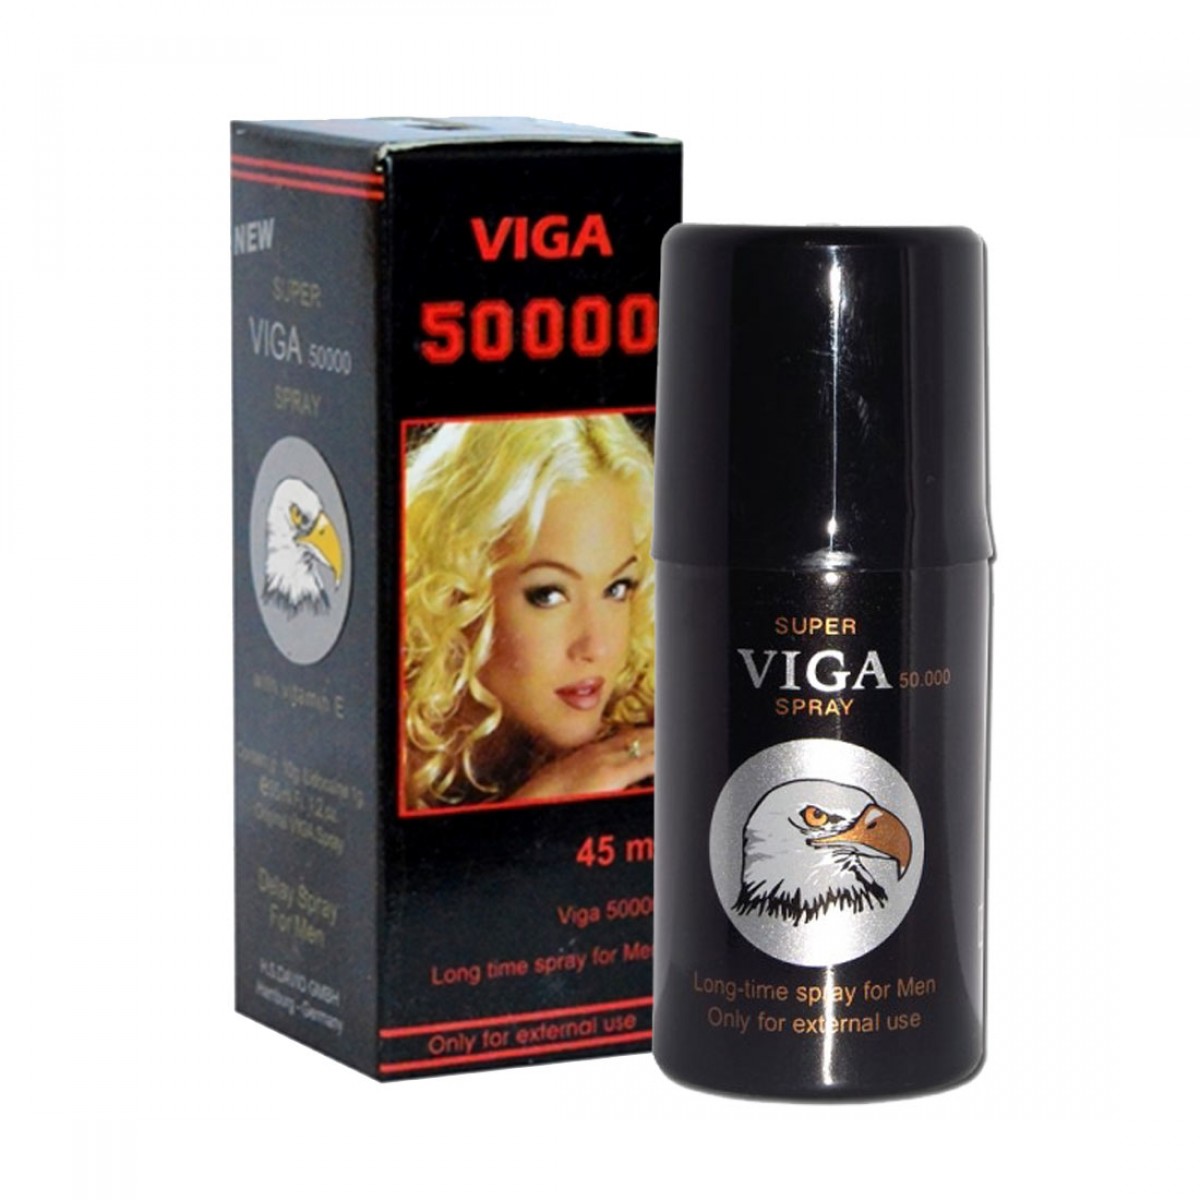 viga-50000-delay-spray-45mg